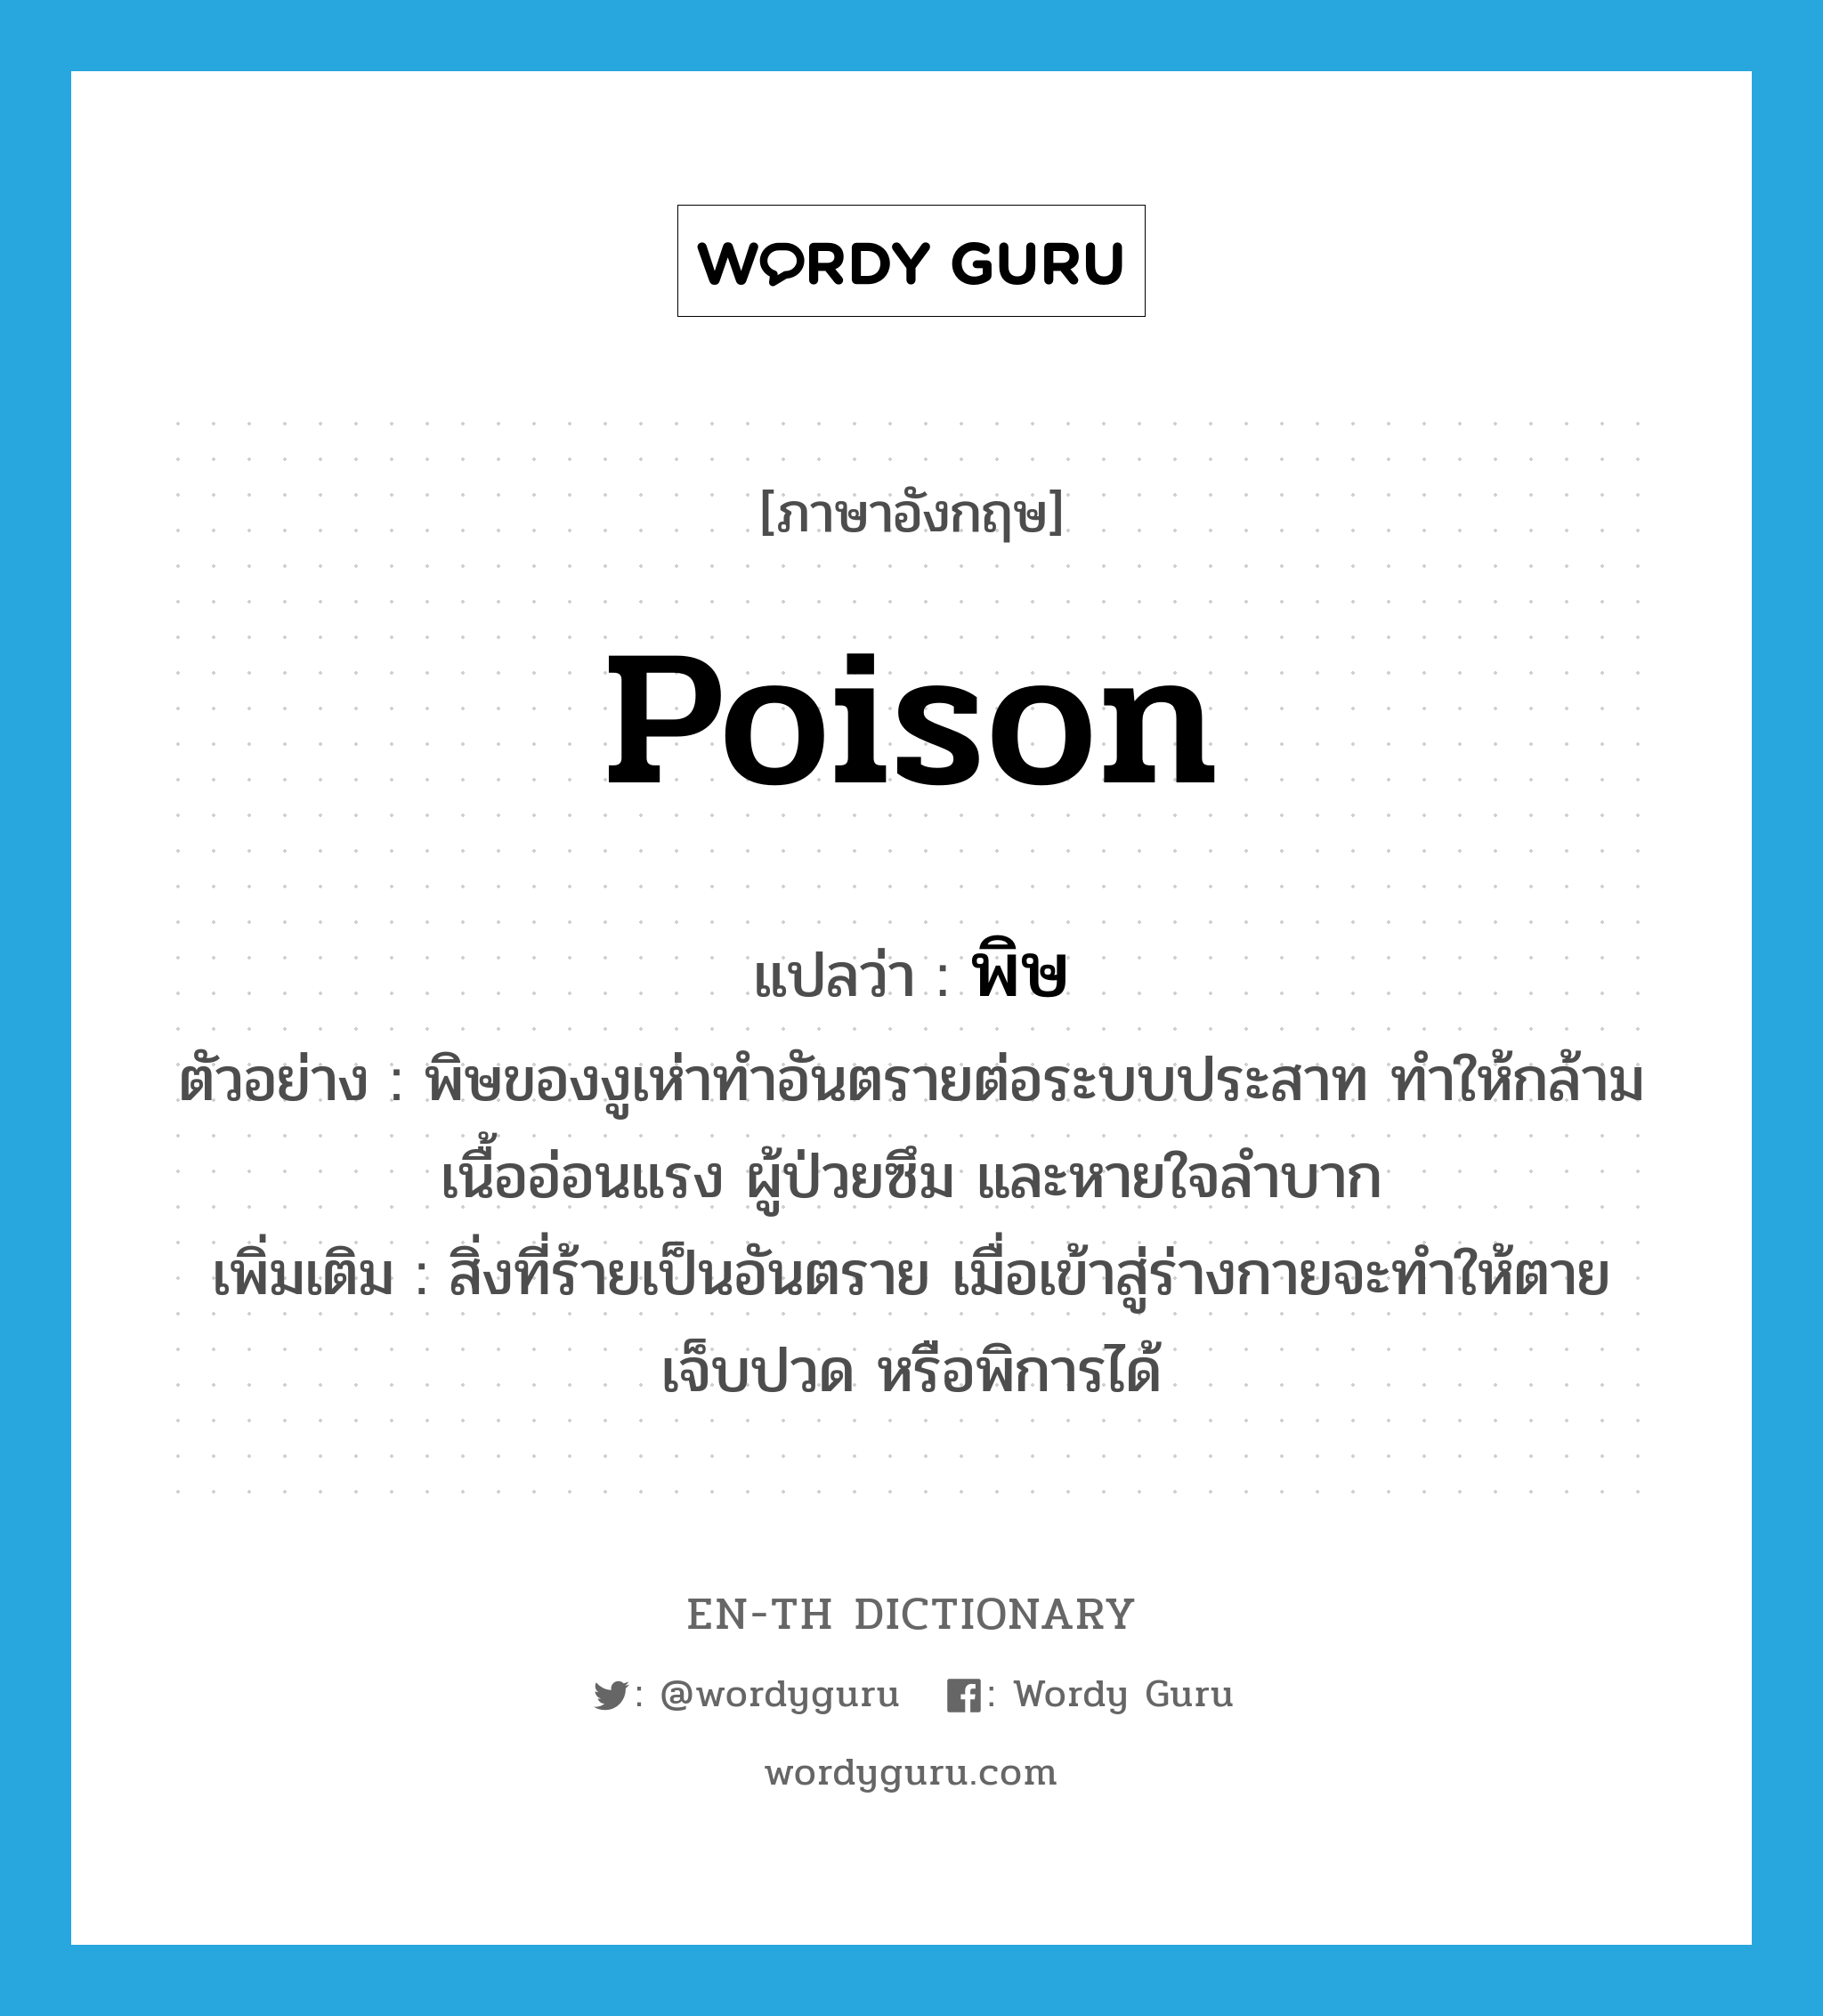 poison แปลว่า?, คำศัพท์ภาษาอังกฤษ poison แปลว่า พิษ ประเภท N ตัวอย่าง พิษของงูเห่าทำอันตรายต่อระบบประสาท ทำให้กล้ามเนื้ออ่อนแรง ผู้ป่วยซึม และหายใจลำบาก เพิ่มเติม สิ่งที่ร้ายเป็นอันตราย เมื่อเข้าสู่ร่างกายจะทำให้ตาย เจ็บปวด หรือพิการได้ หมวด N